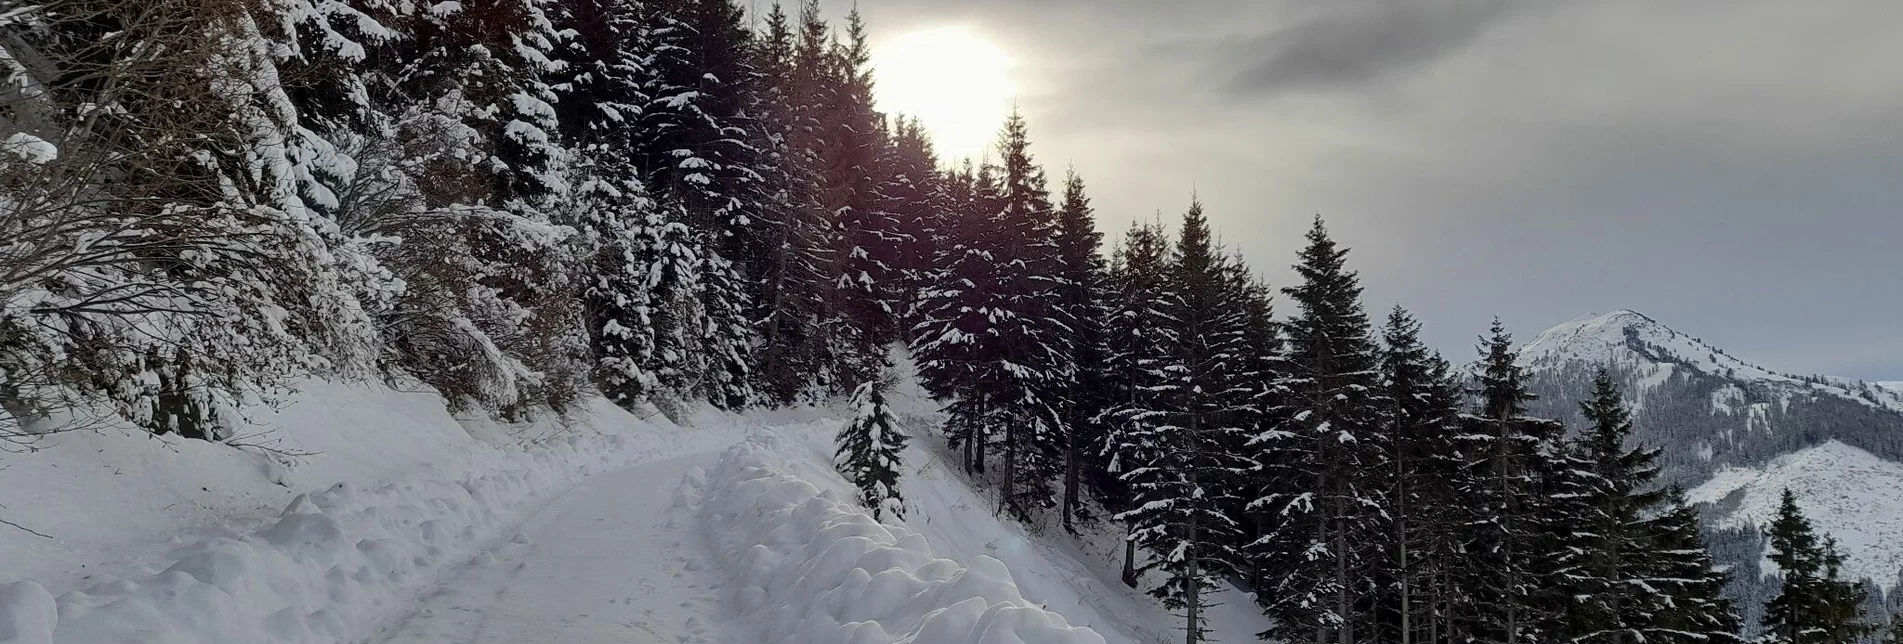 Winterwandern Winterwandern am Fischeralmweg - Touren-Impression #1 | © Erlebnisregion Schladming-Dachstein